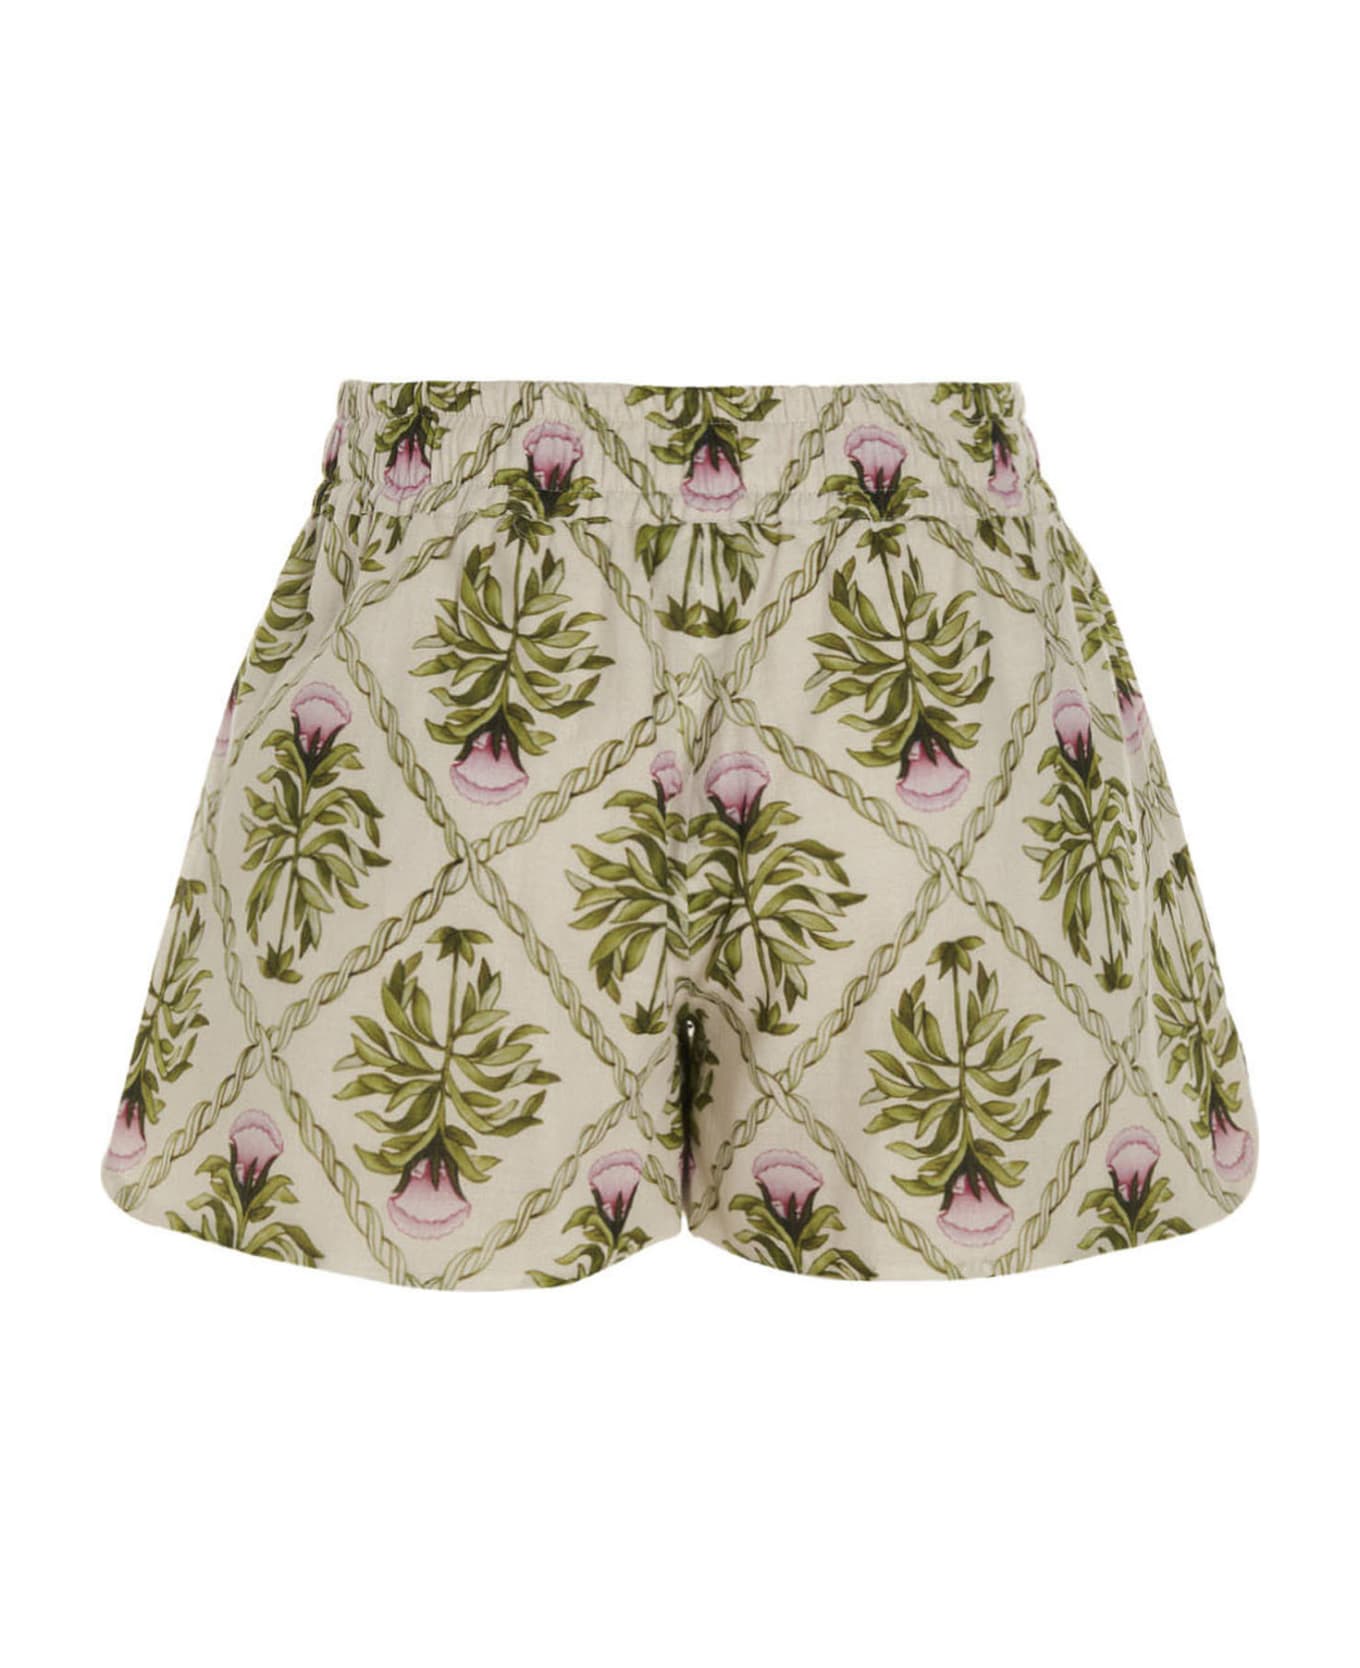 Giambattista Valli Floral Print Shorts - Multicolor ショートパンツ